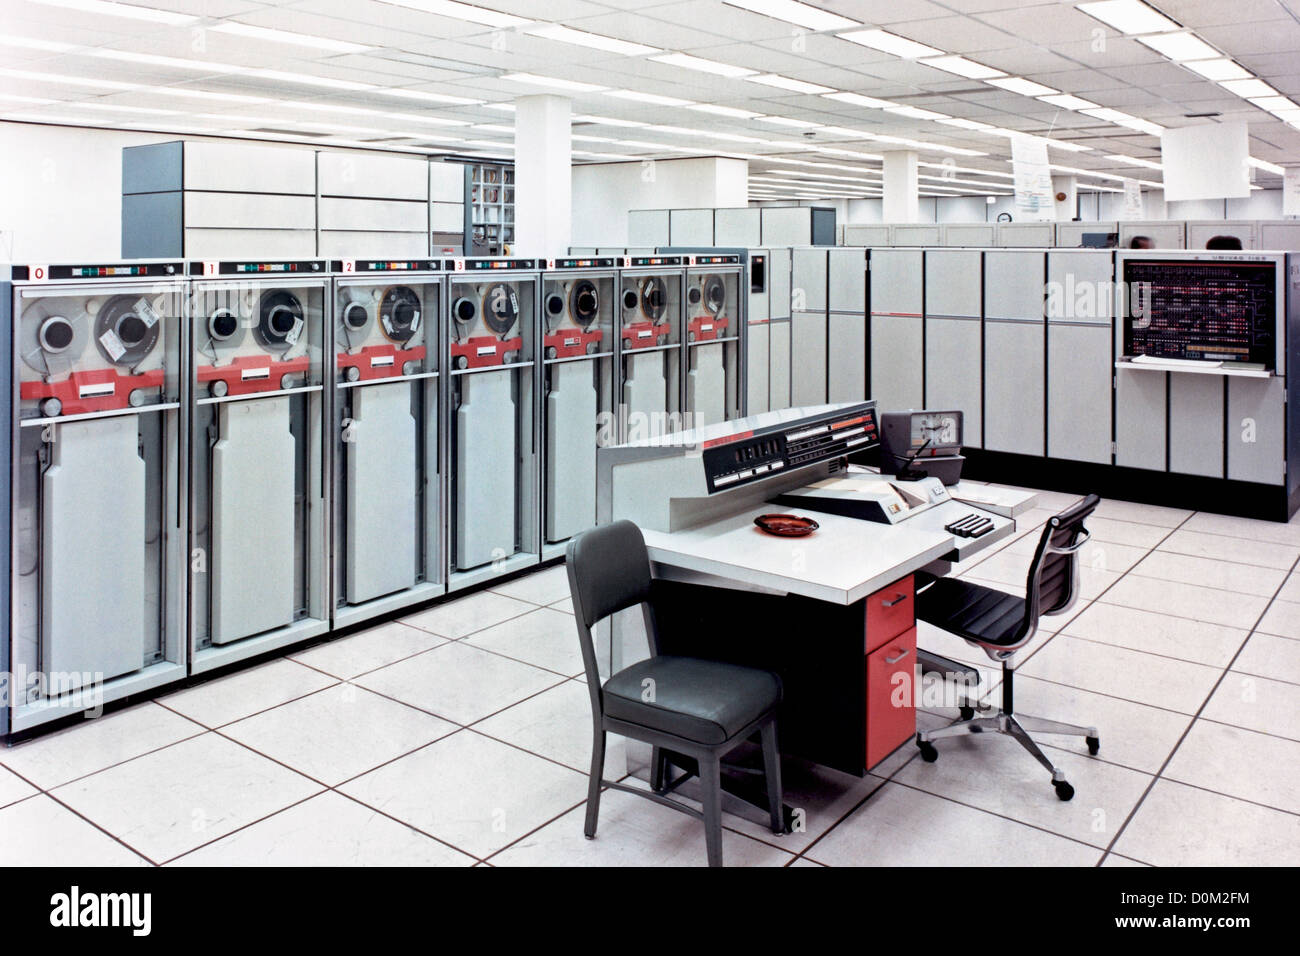 Ein State-of-the-Art Univac 110811 circa 1967 war installiert vier solcher Maschinen in Berechnung Analysis Division Stockfoto